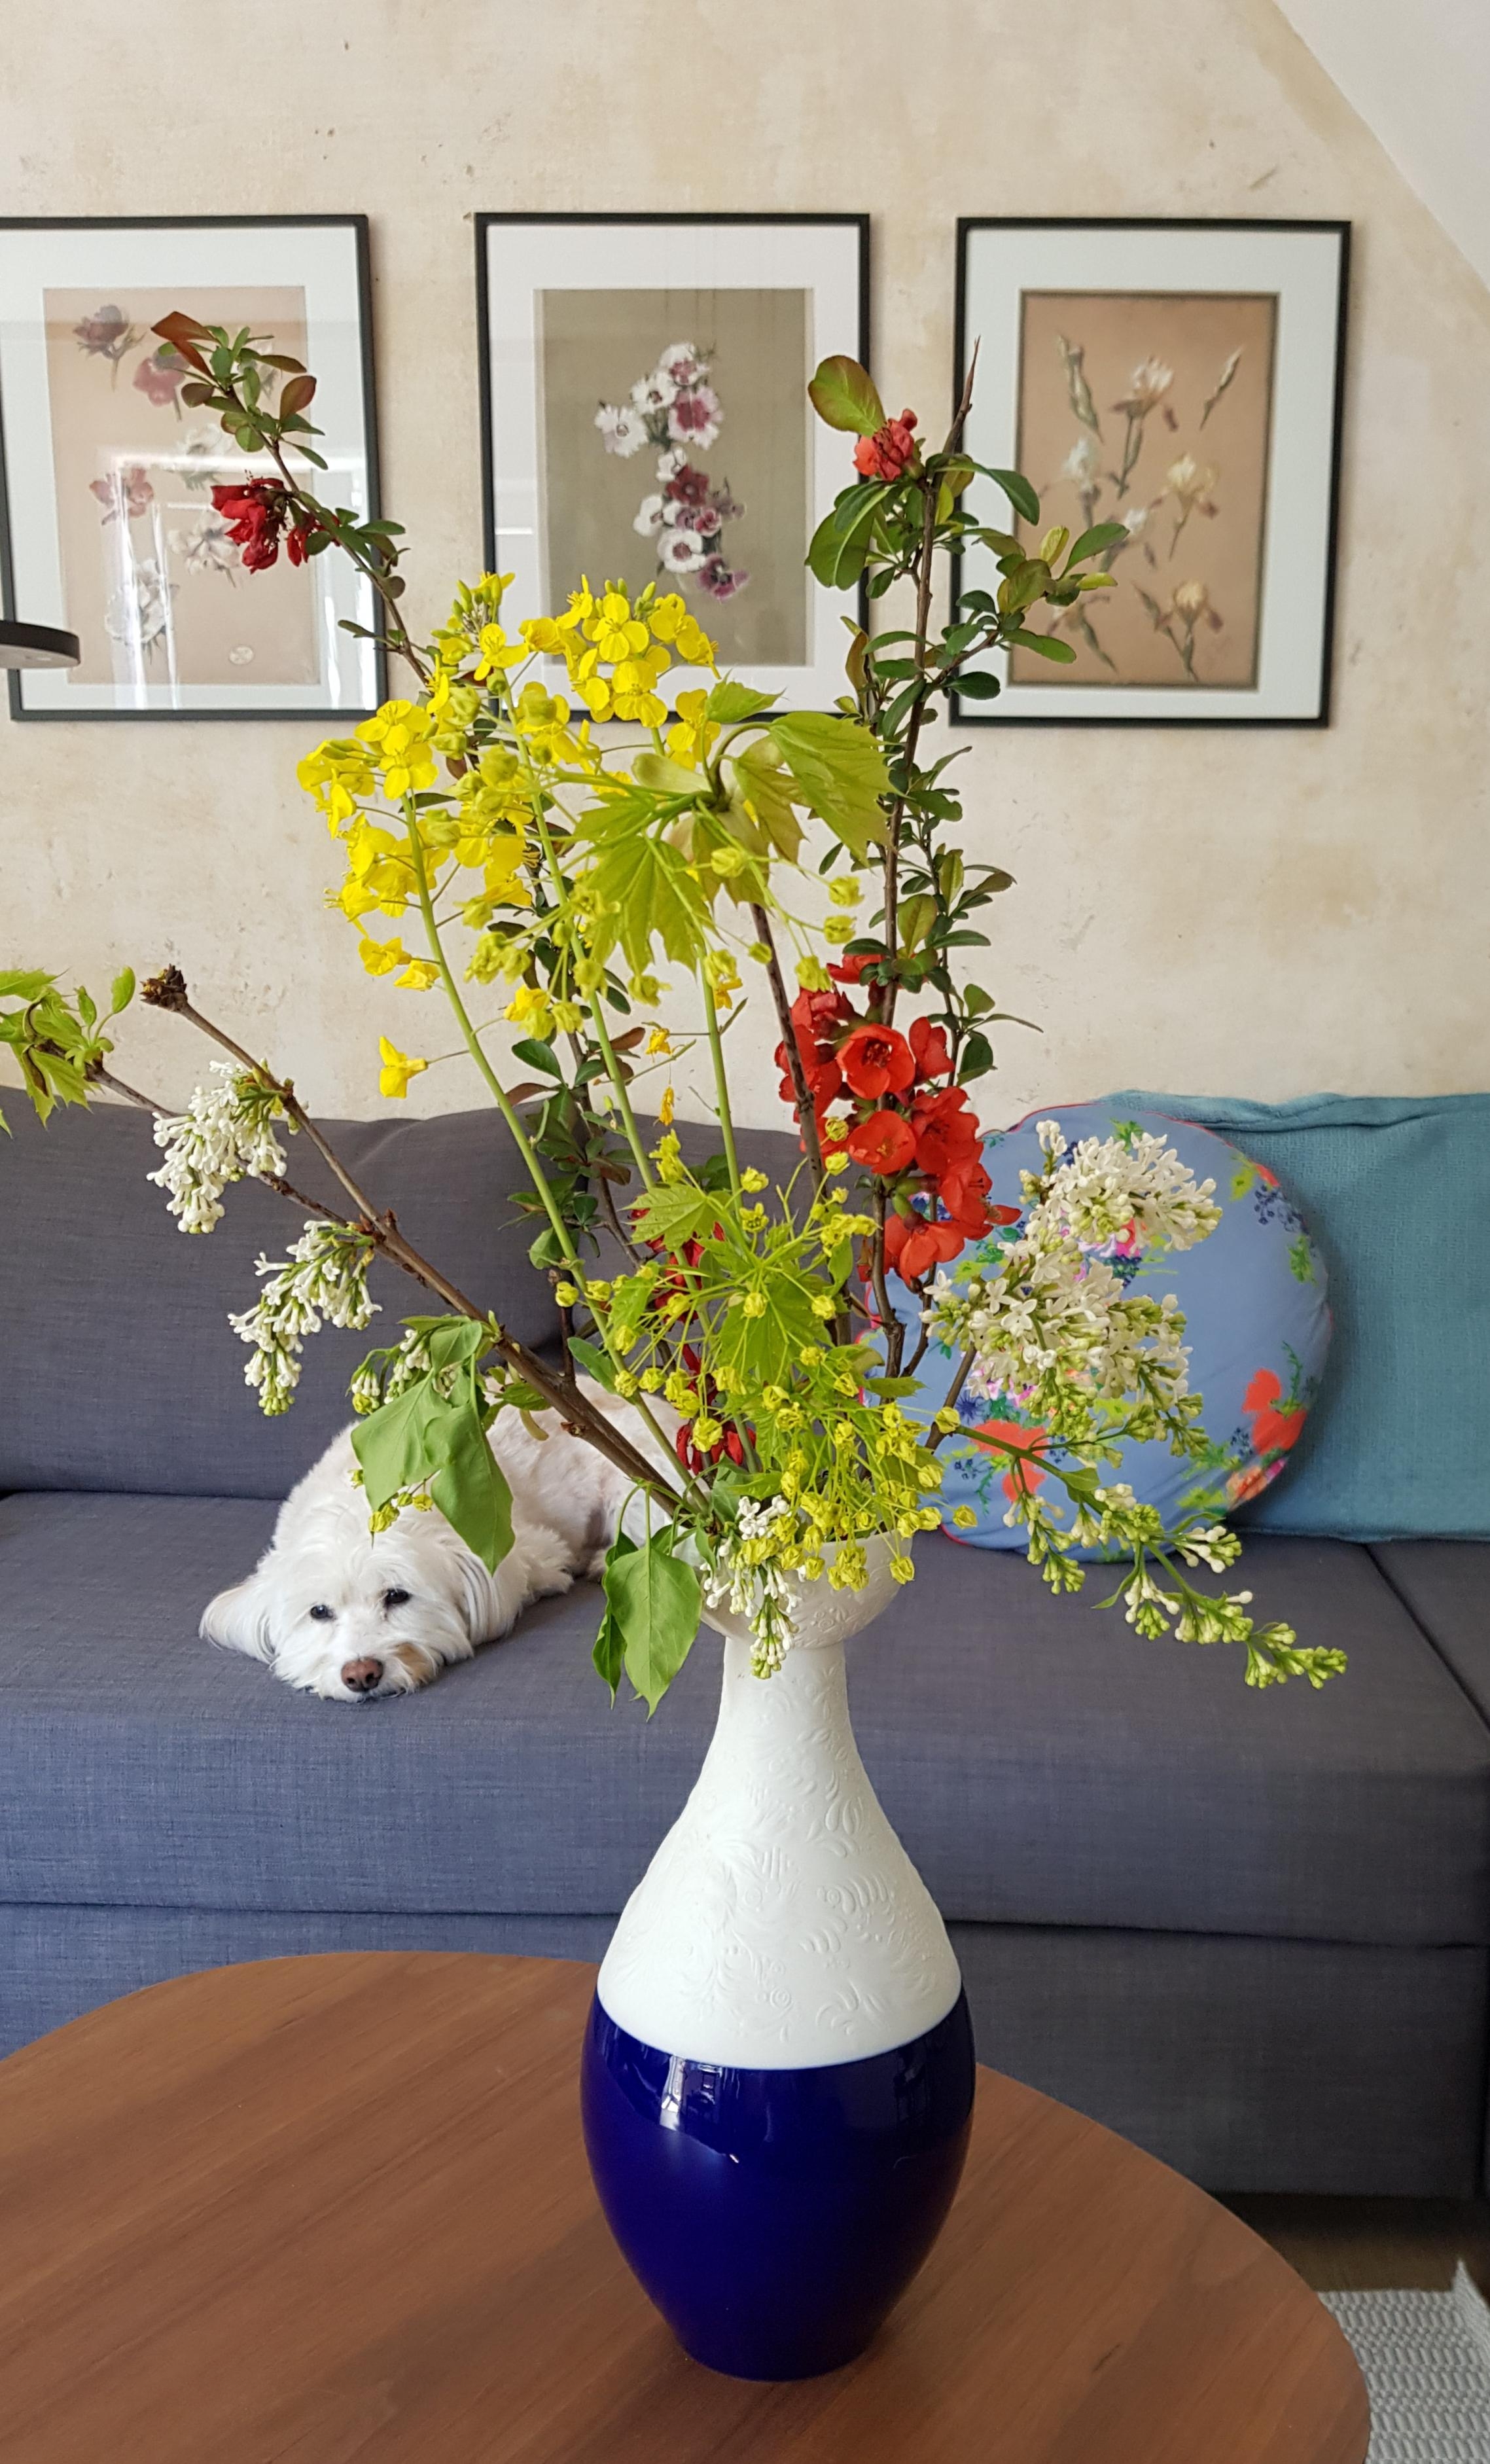 Das Wochenende naht.. #freshflowerfriday #hund #blumen #vase